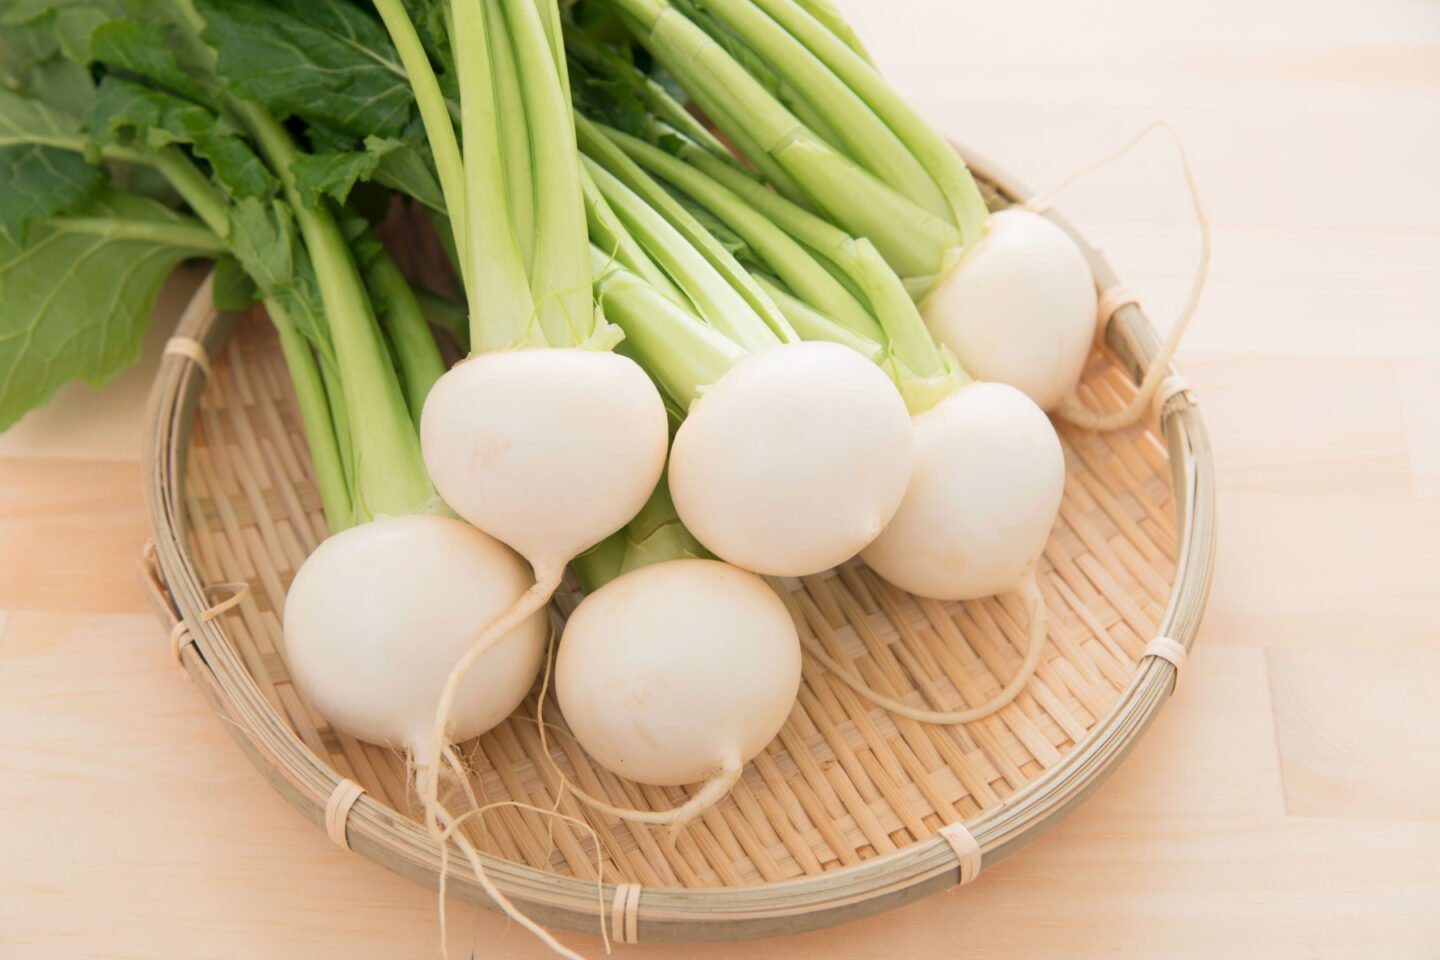 raw white turnips